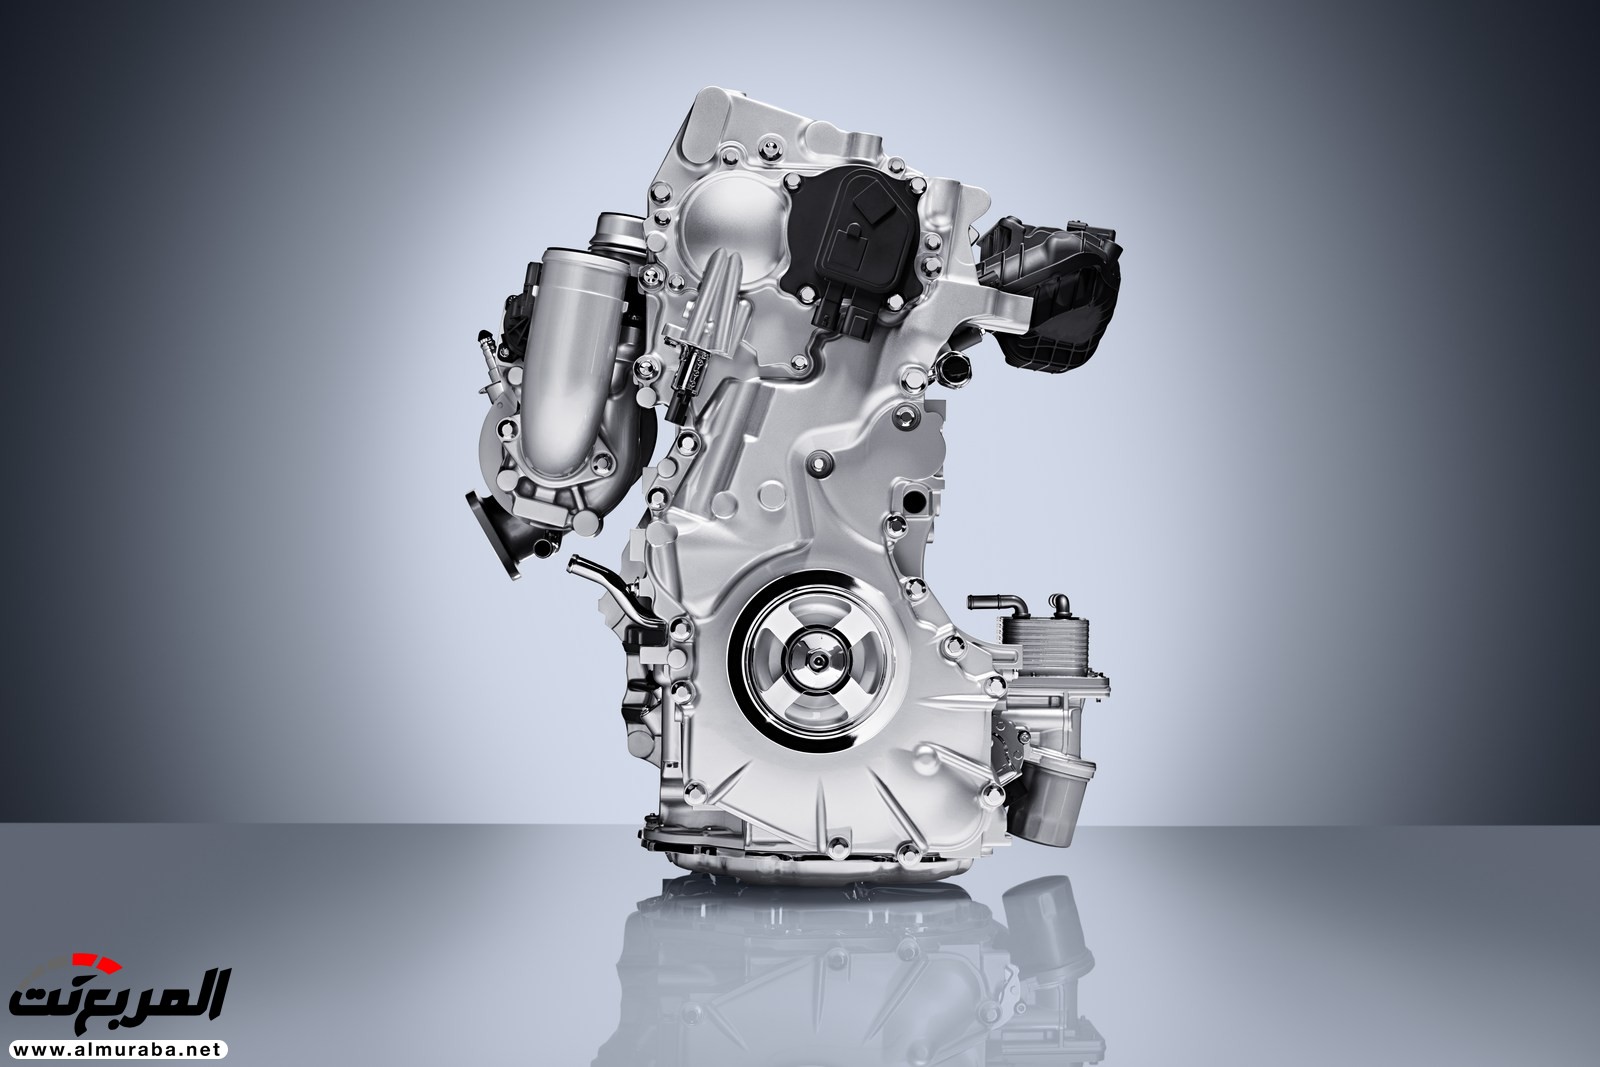 إنفينيتي QX50 الجديدة كلياً 2019 تظهر رسمياً بمحرك هو الأكثر تطوراً 24